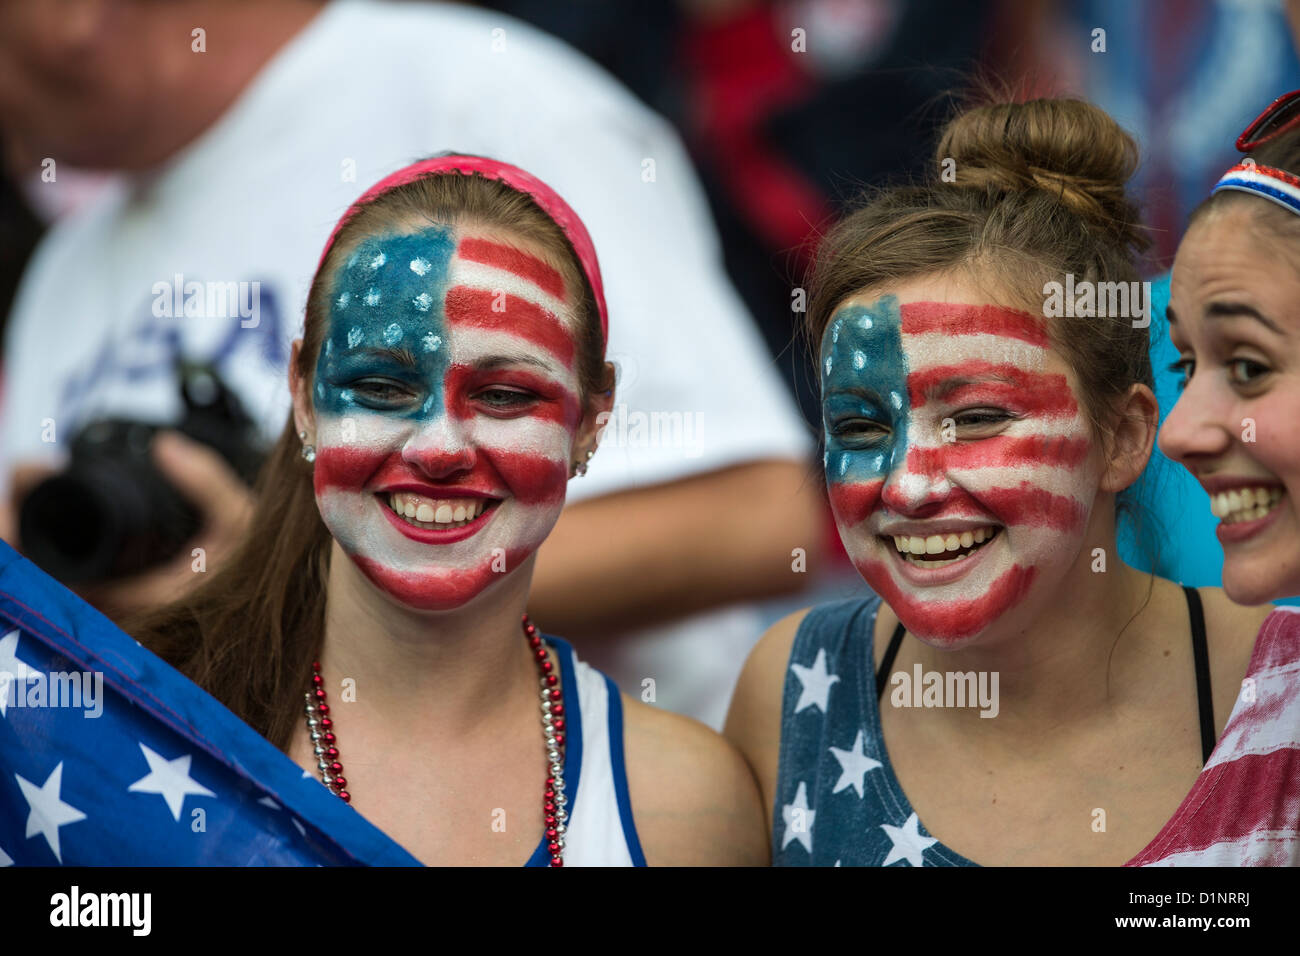 USA fans watch USA remporte l'or sur le Japon en femmes Football (soccer) aux Jeux Olympiques d'été, Londres 2012 Banque D'Images